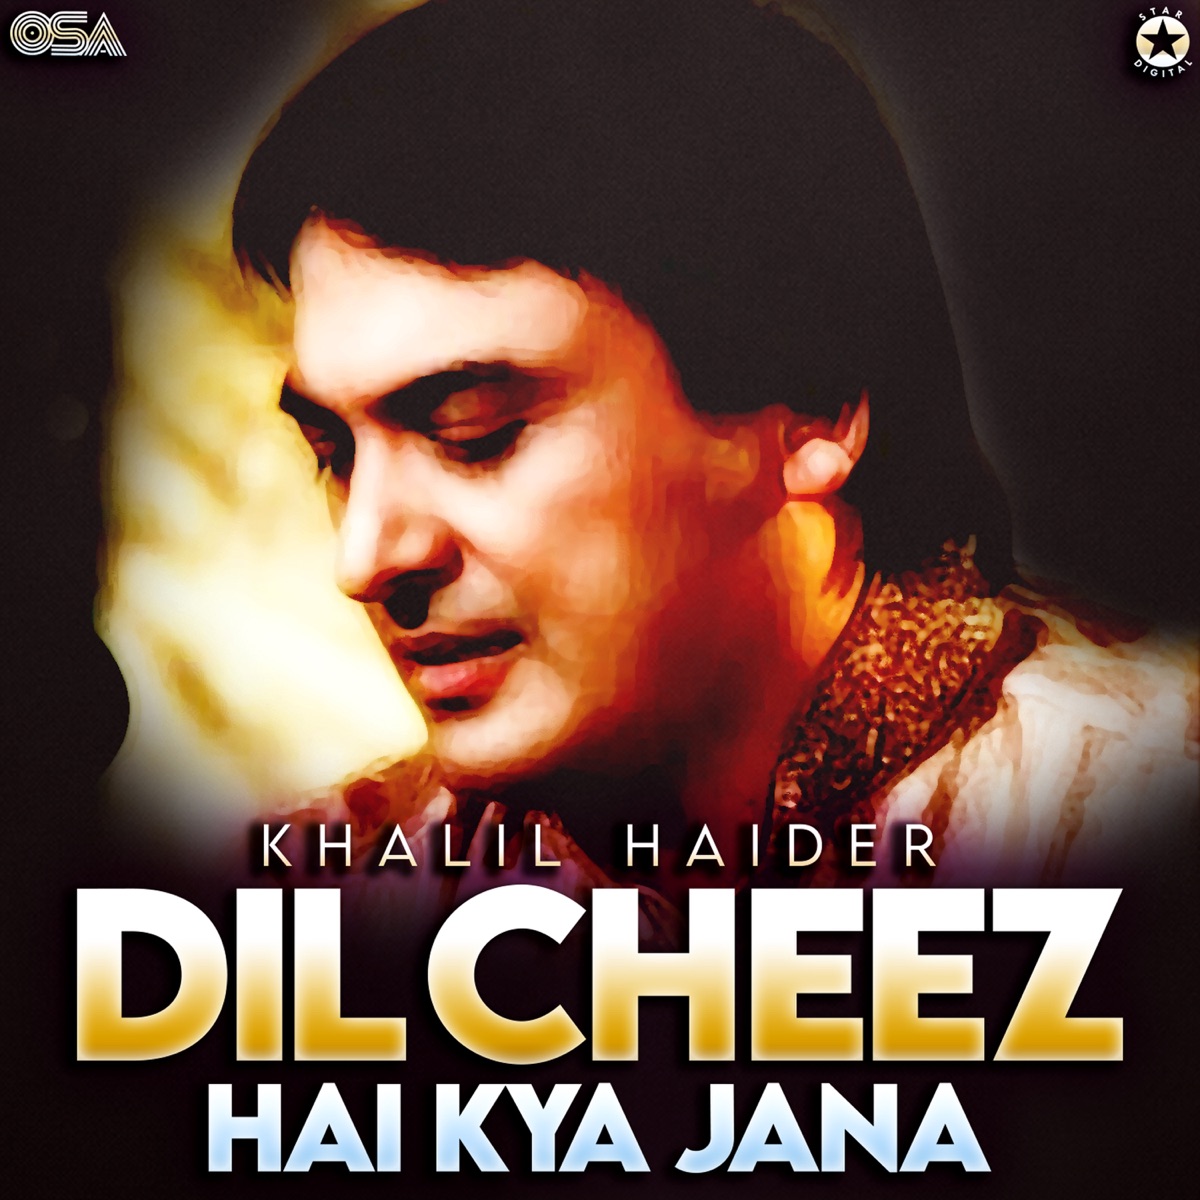 Dil Cheez Hai Kya Jana - Single - Album by Khalil Haider - Apple Music